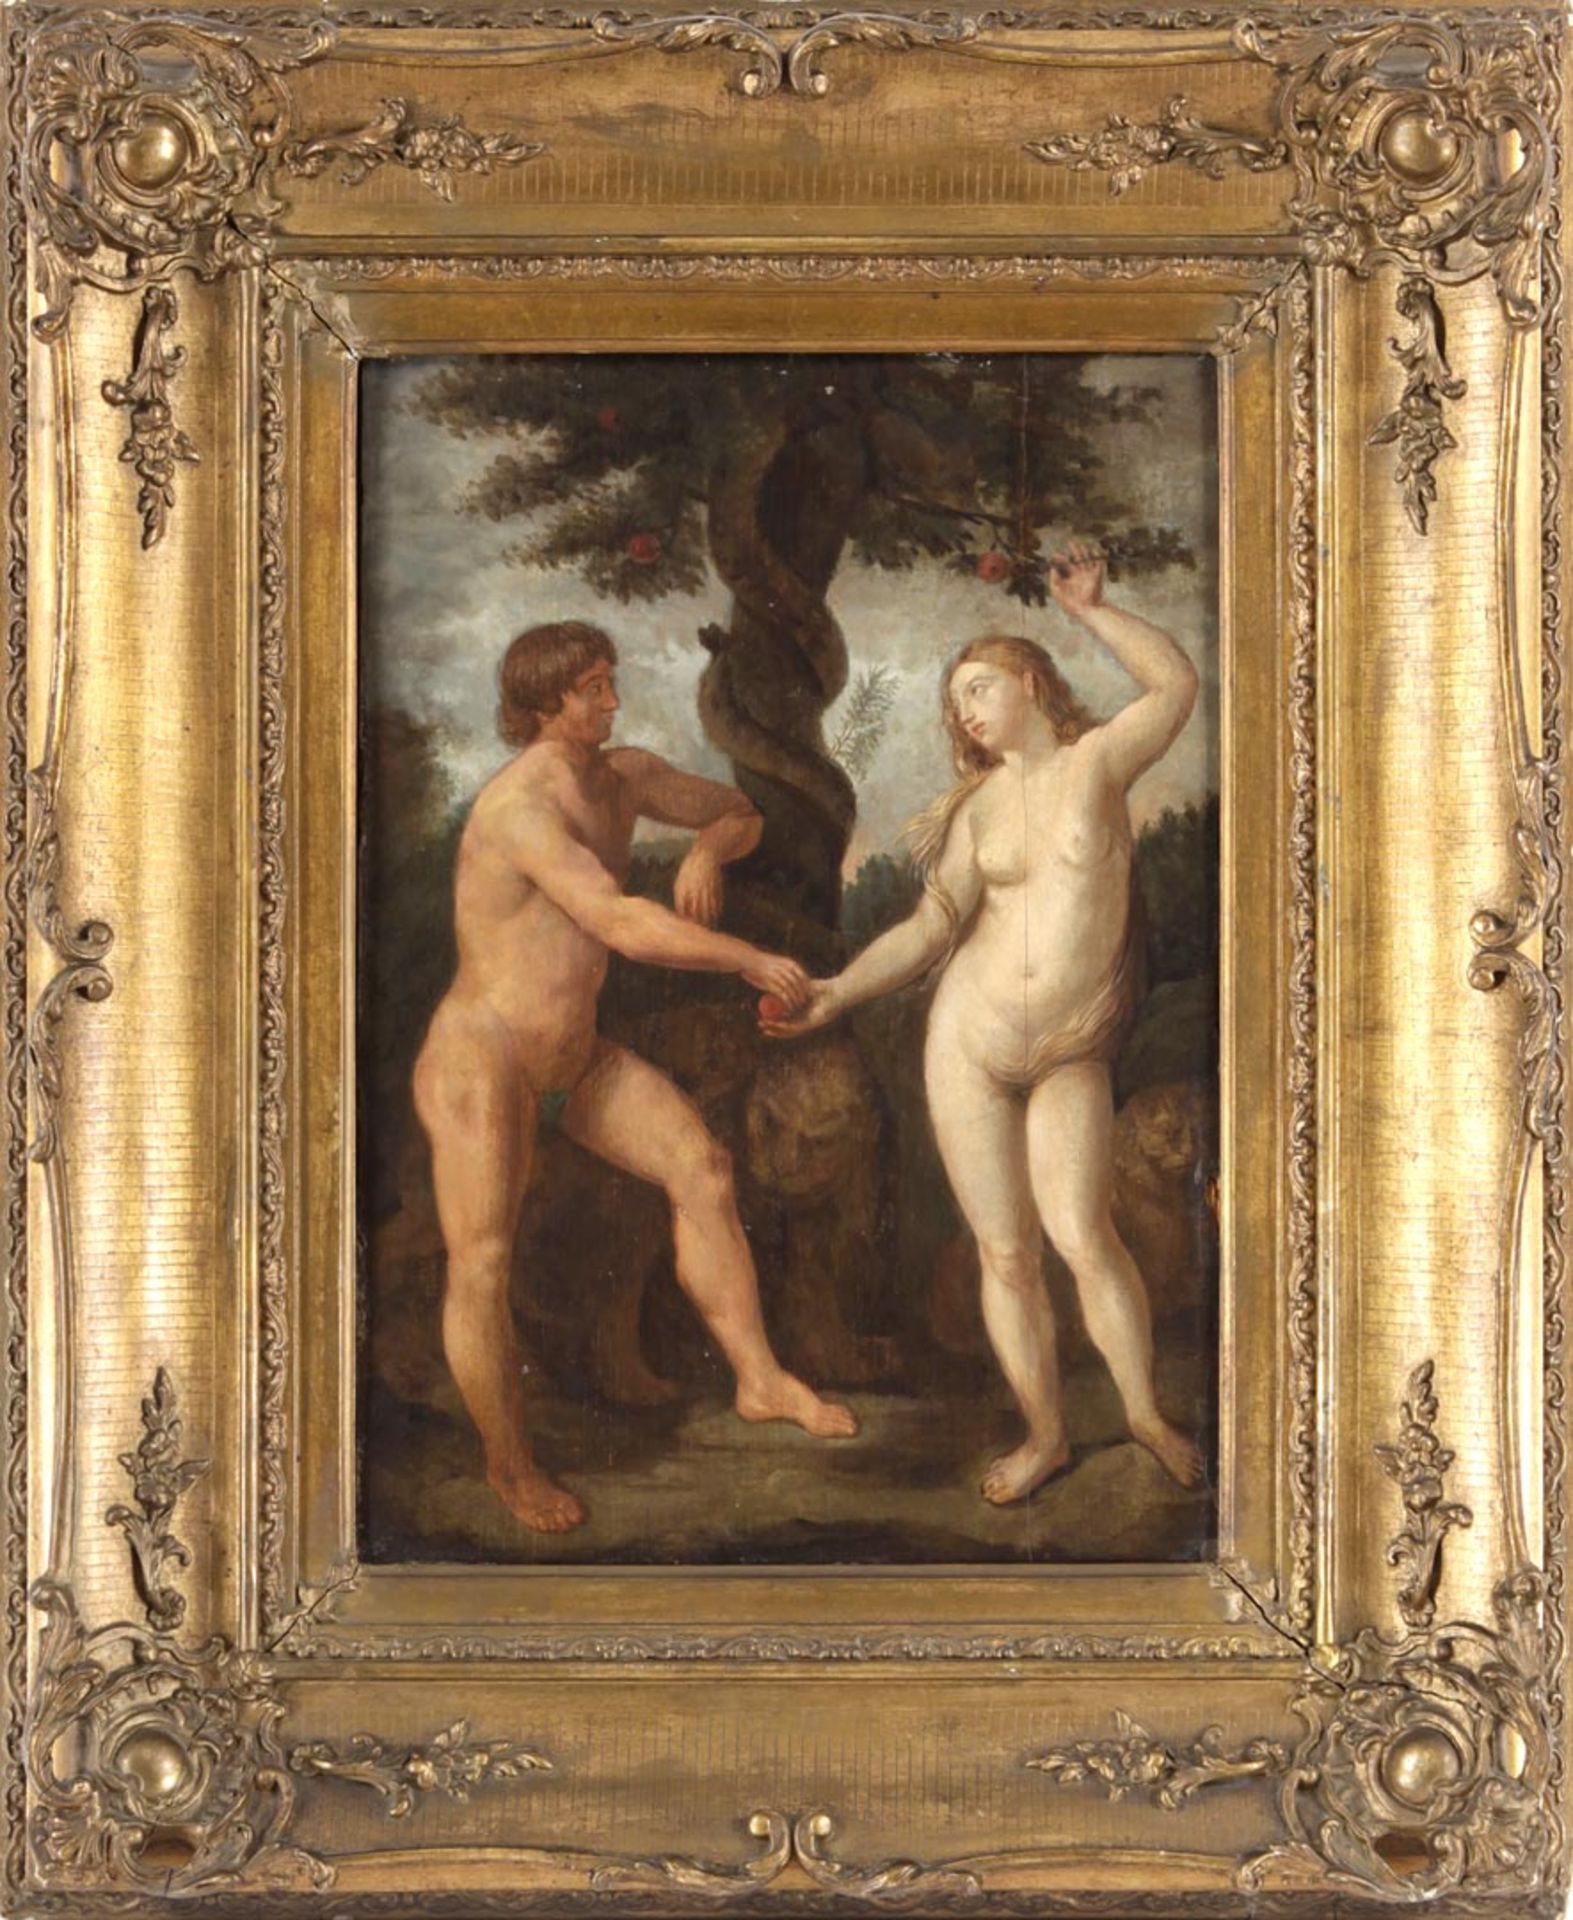 Adam und Eva wohl 18.Jh. Kopie nach Guido Reni (1575-1642) "Adam und Eva im Paradies".- Öl a.